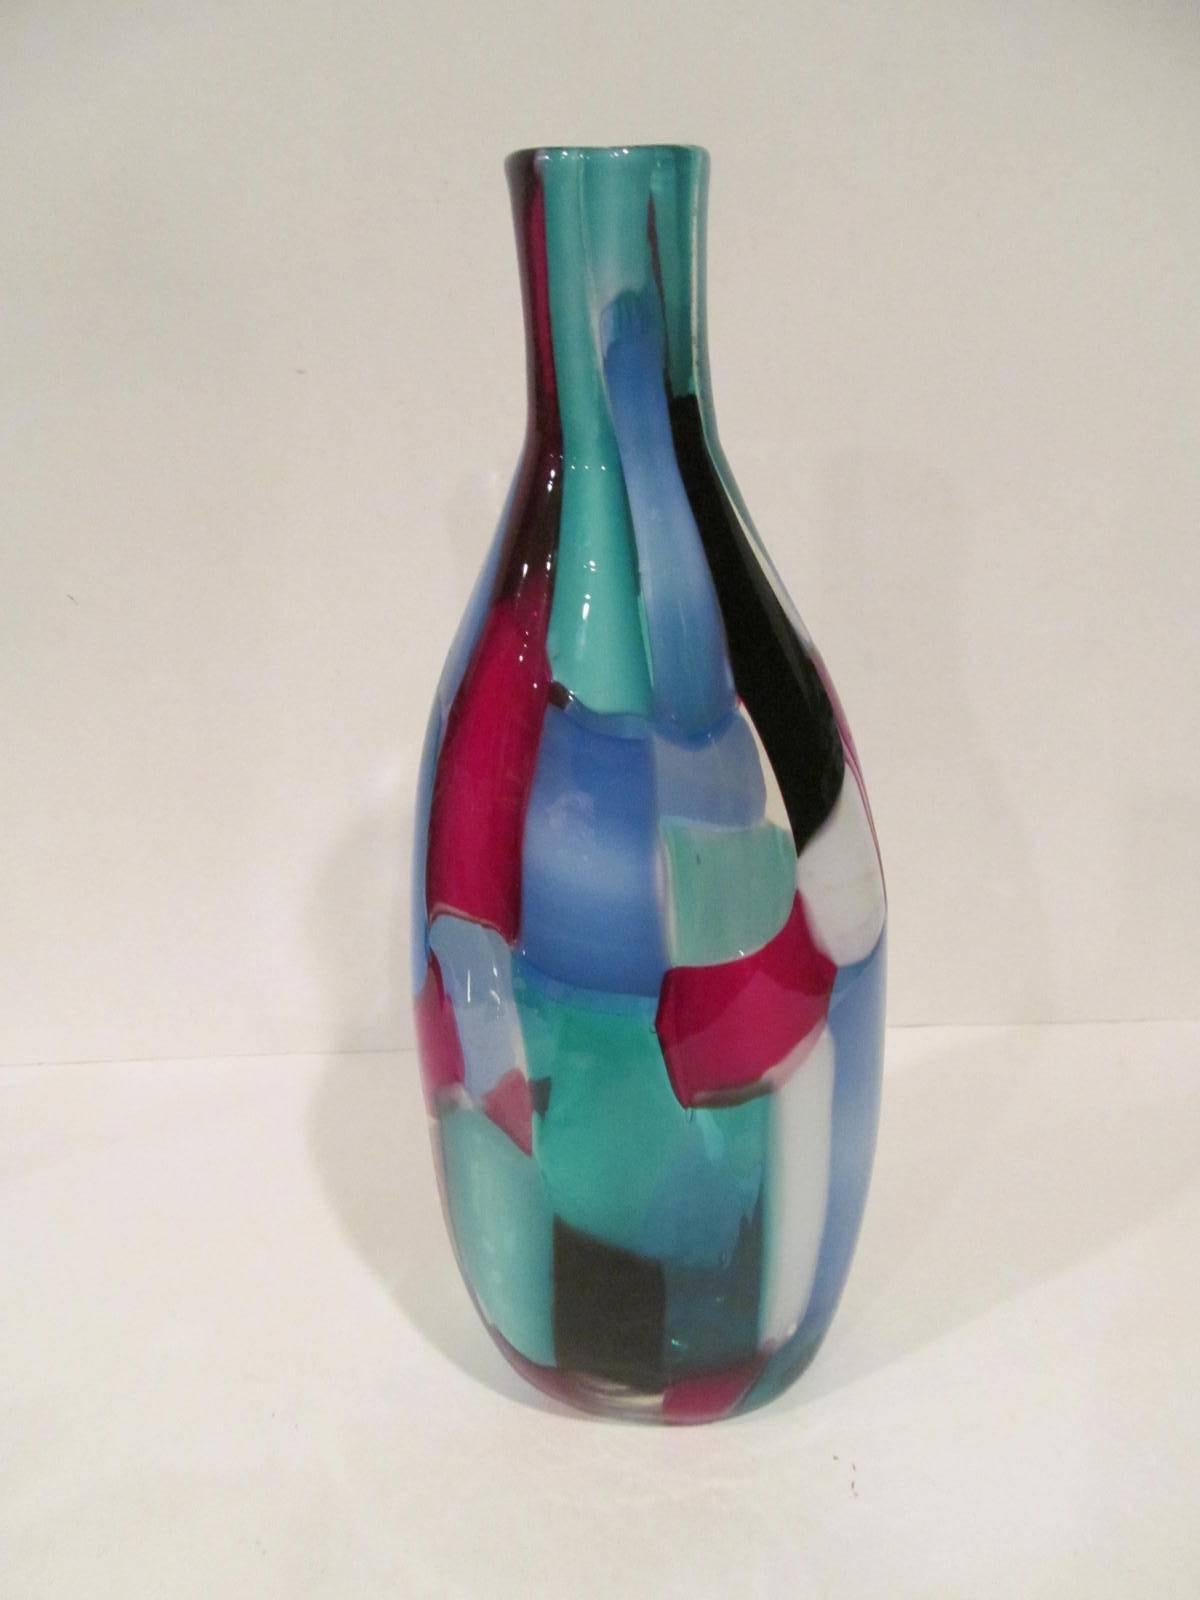 Rare Venini Pezzato vase designed by Fulvio Bianconi, circa 1950s. Signed with three line acid mark 